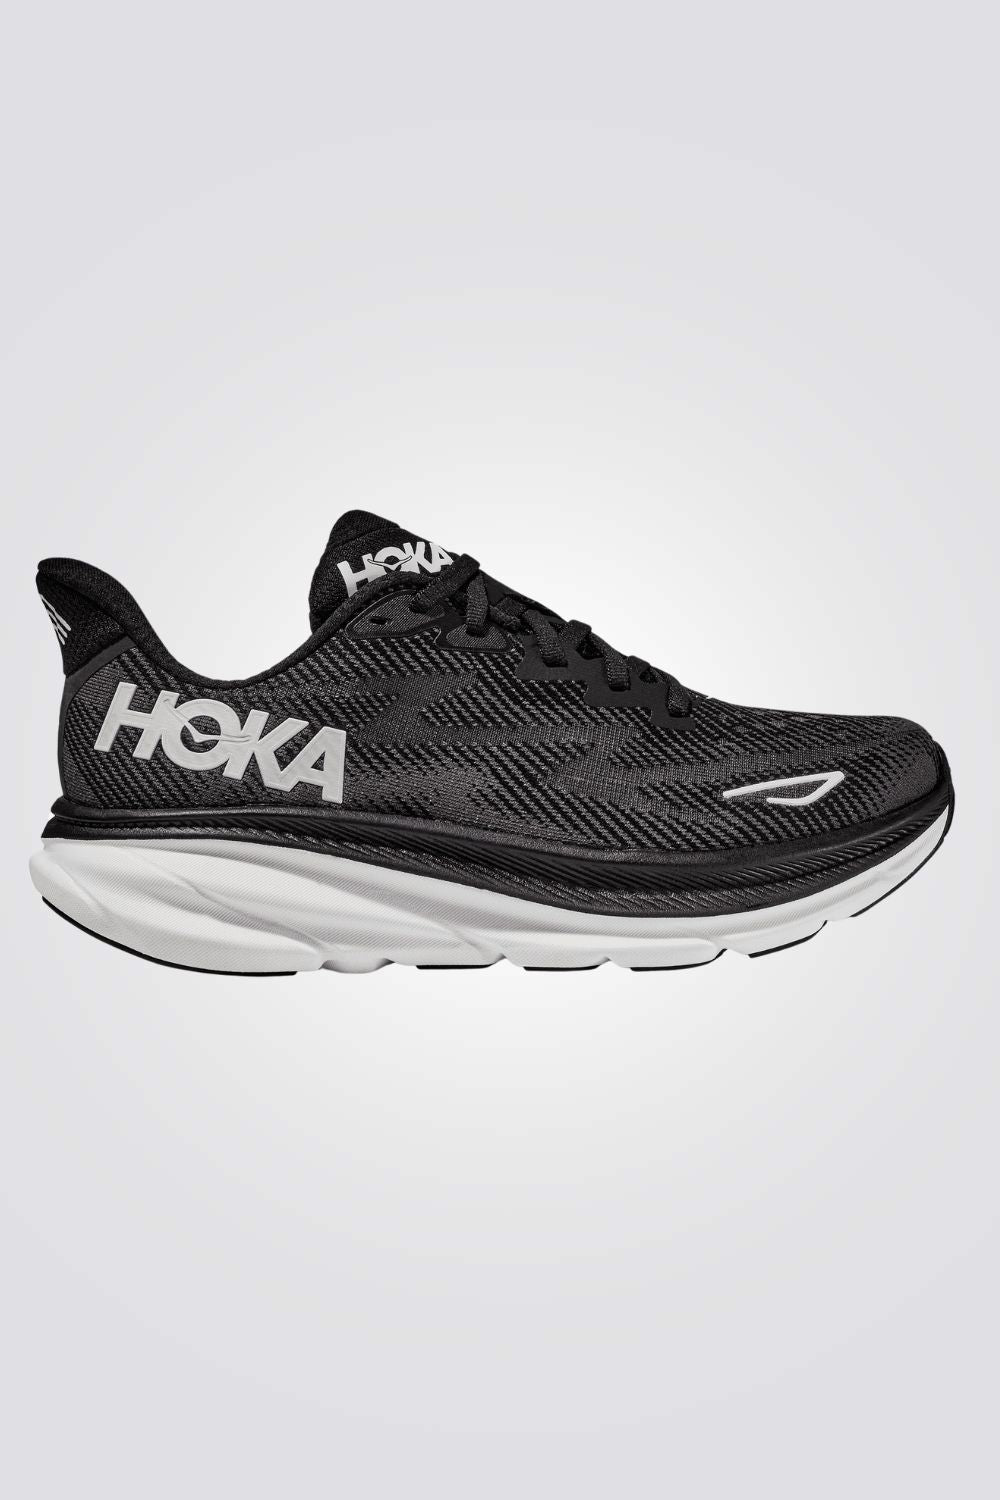 נעליים מבית המותג HOKA בעלות מדרס פנימי רך במיוחד שעוטף את הרגל בנוחות בלתי מתפשרת. סולייה חיצונית עמידה בתוספת בולם זעזועים, שמספקת אחיזה מלאה בקרקע